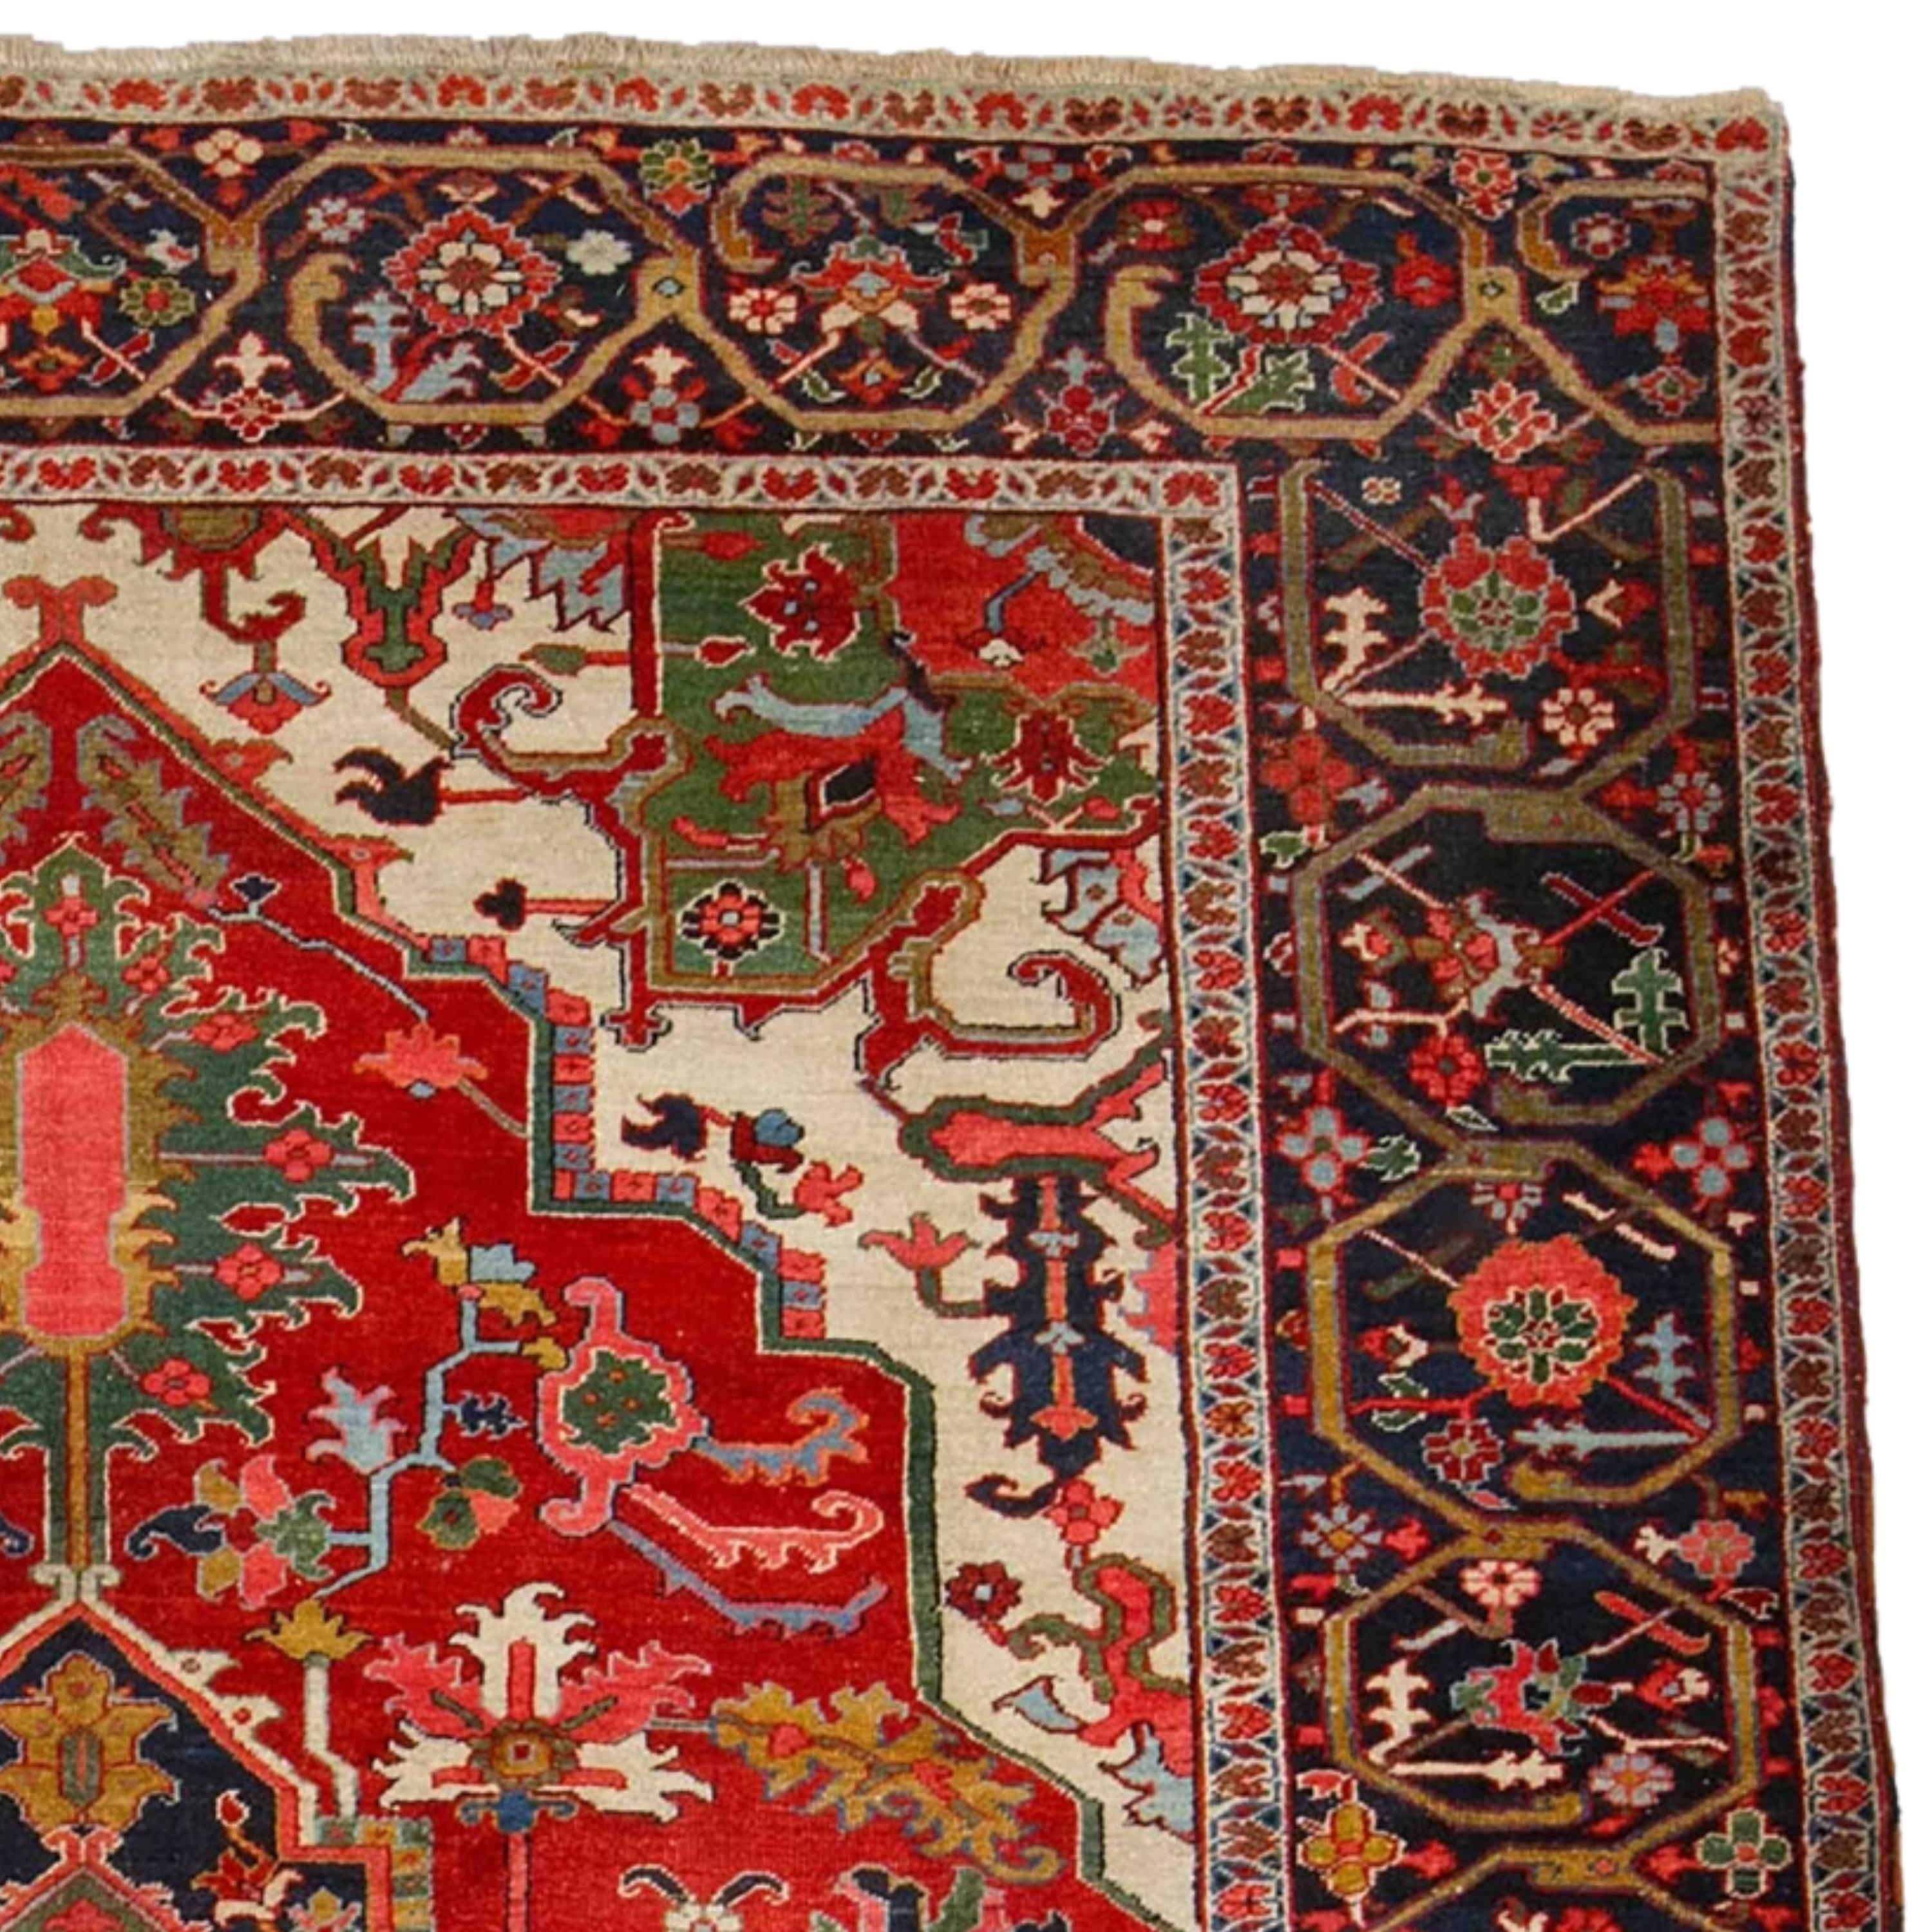 Antique Serapi Carpet - 19th Century Serapi Carpet, Antique Rug In Good Condition For Sale In Sultanahmet, 34